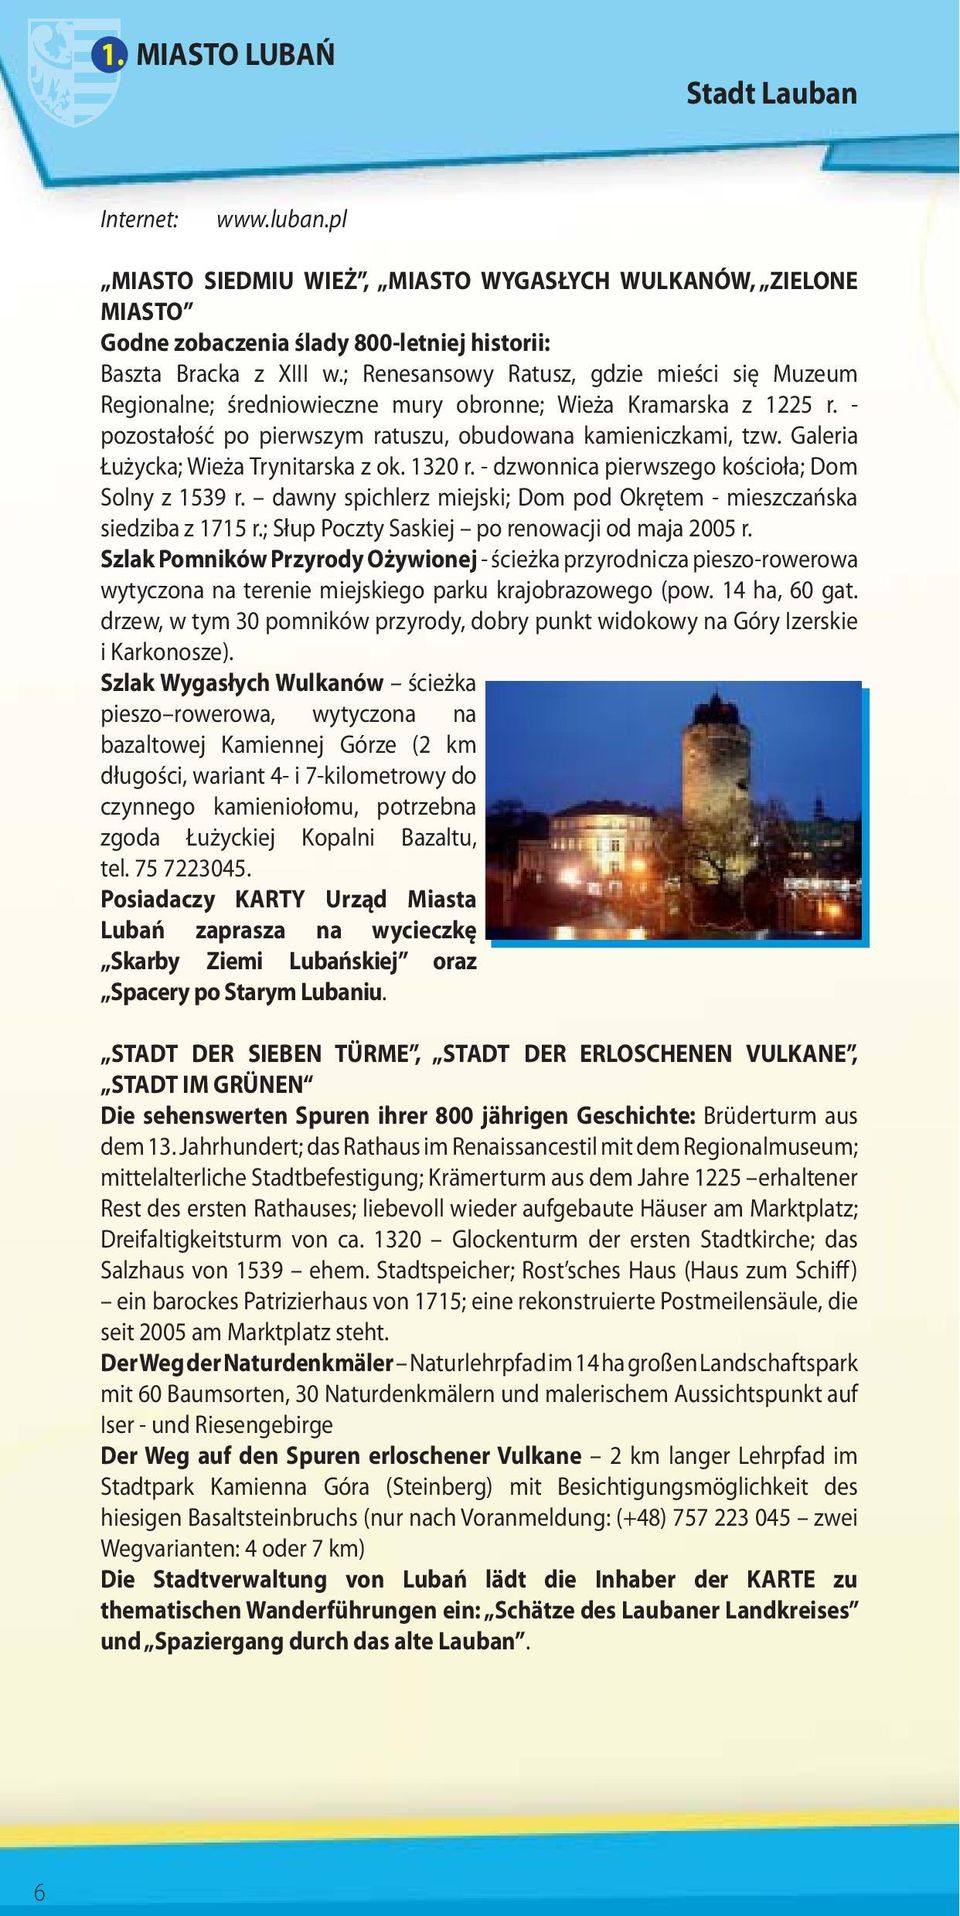 Galeria Łużycka; Wieża Trynitarska z ok. 1320 r. - dzwonnica pierwszego kościoła; Dom Solny z 1539 r. dawny spichlerz miejski; Dom pod Okrętem - mieszczańska siedziba z 1715 r.